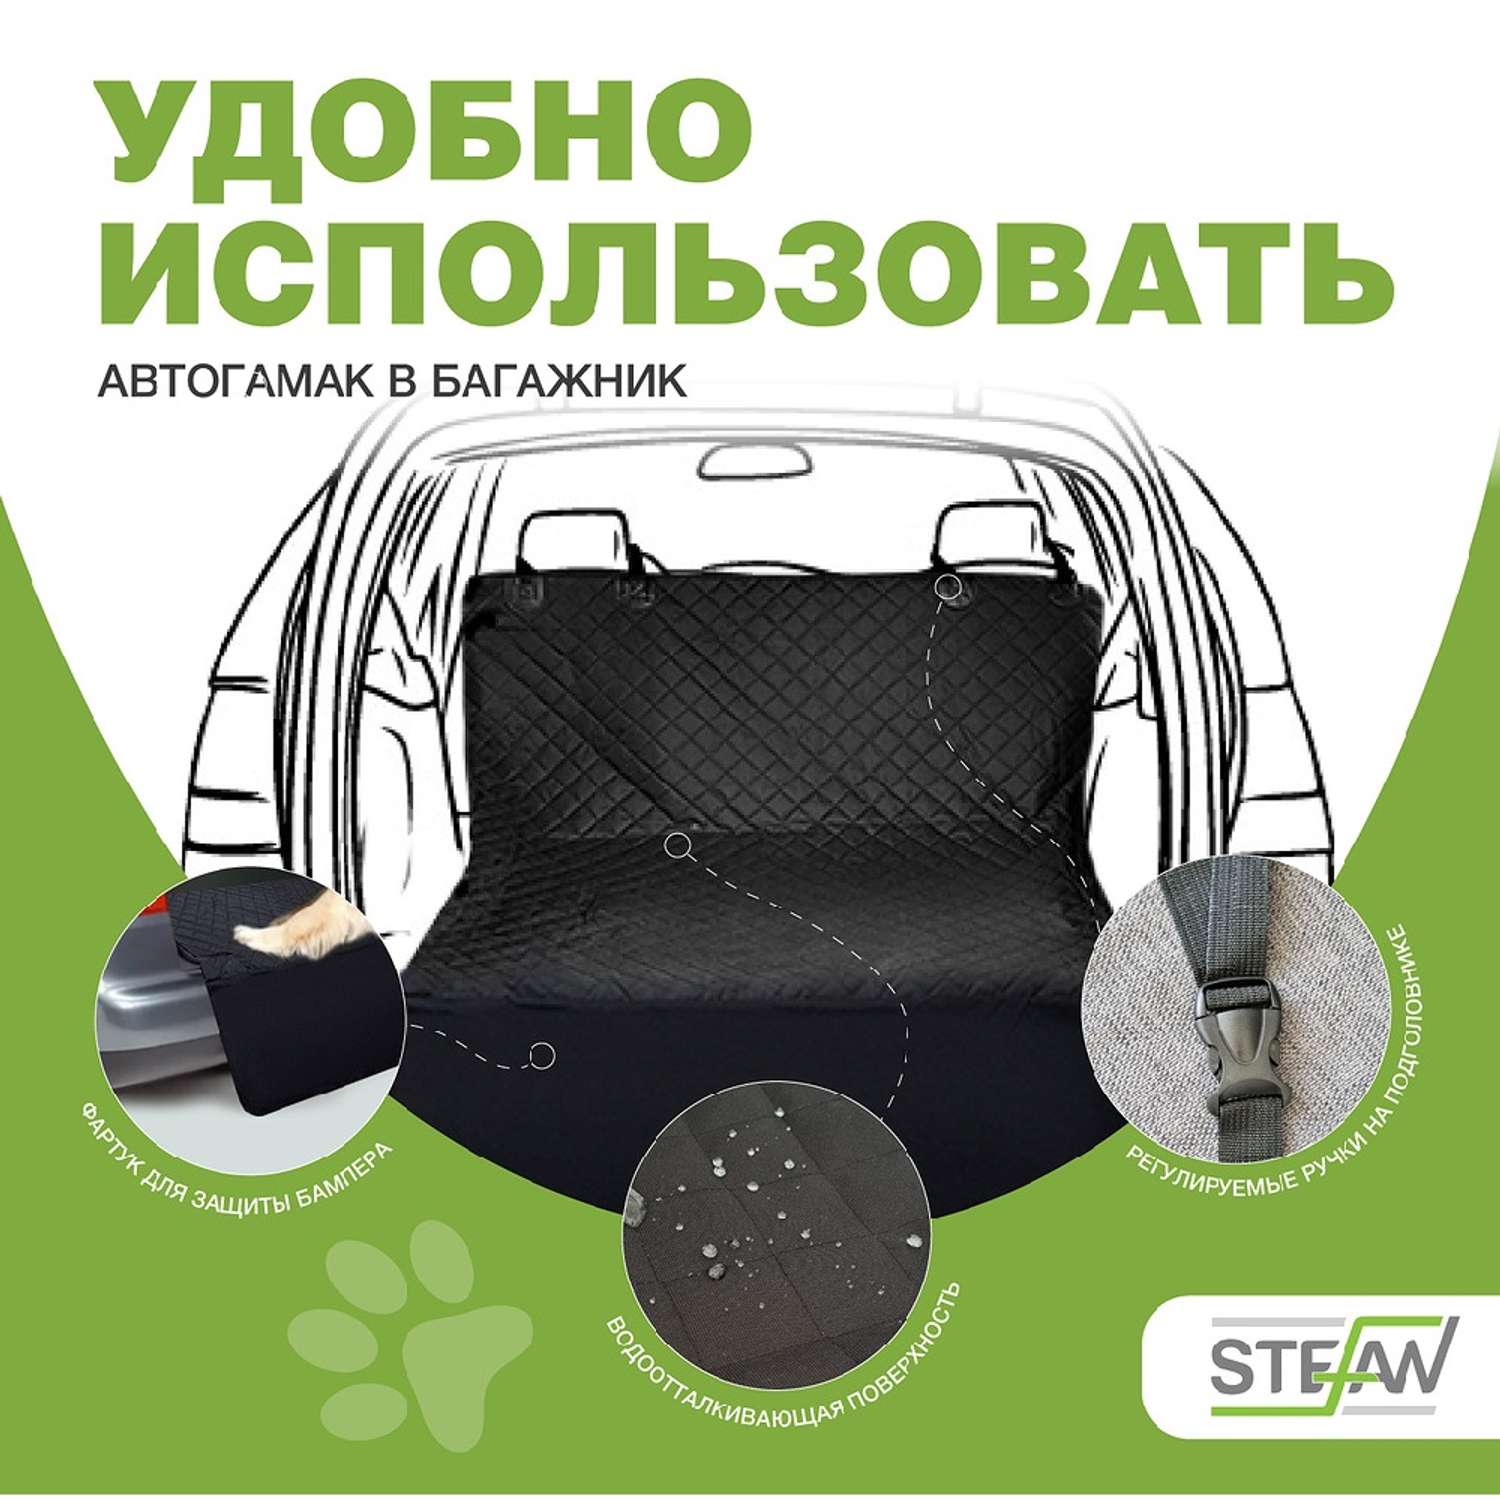 Автогамак для животных Stefan для багажника черный 135x205см - фото 4